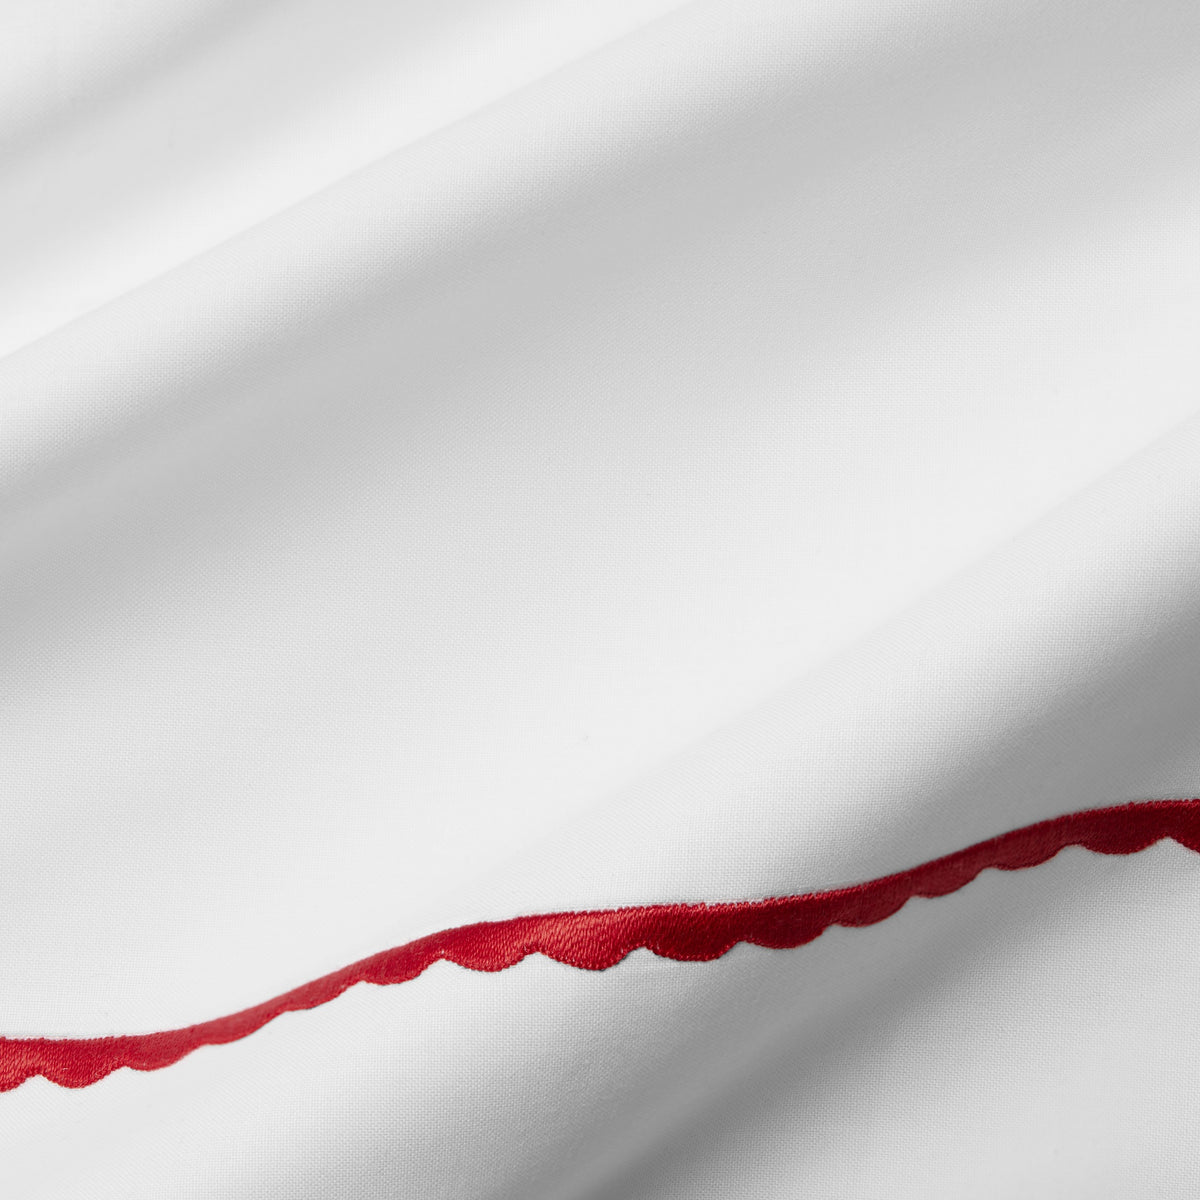 Texture of Sferra Pettine Bedding Collection White/Crimson